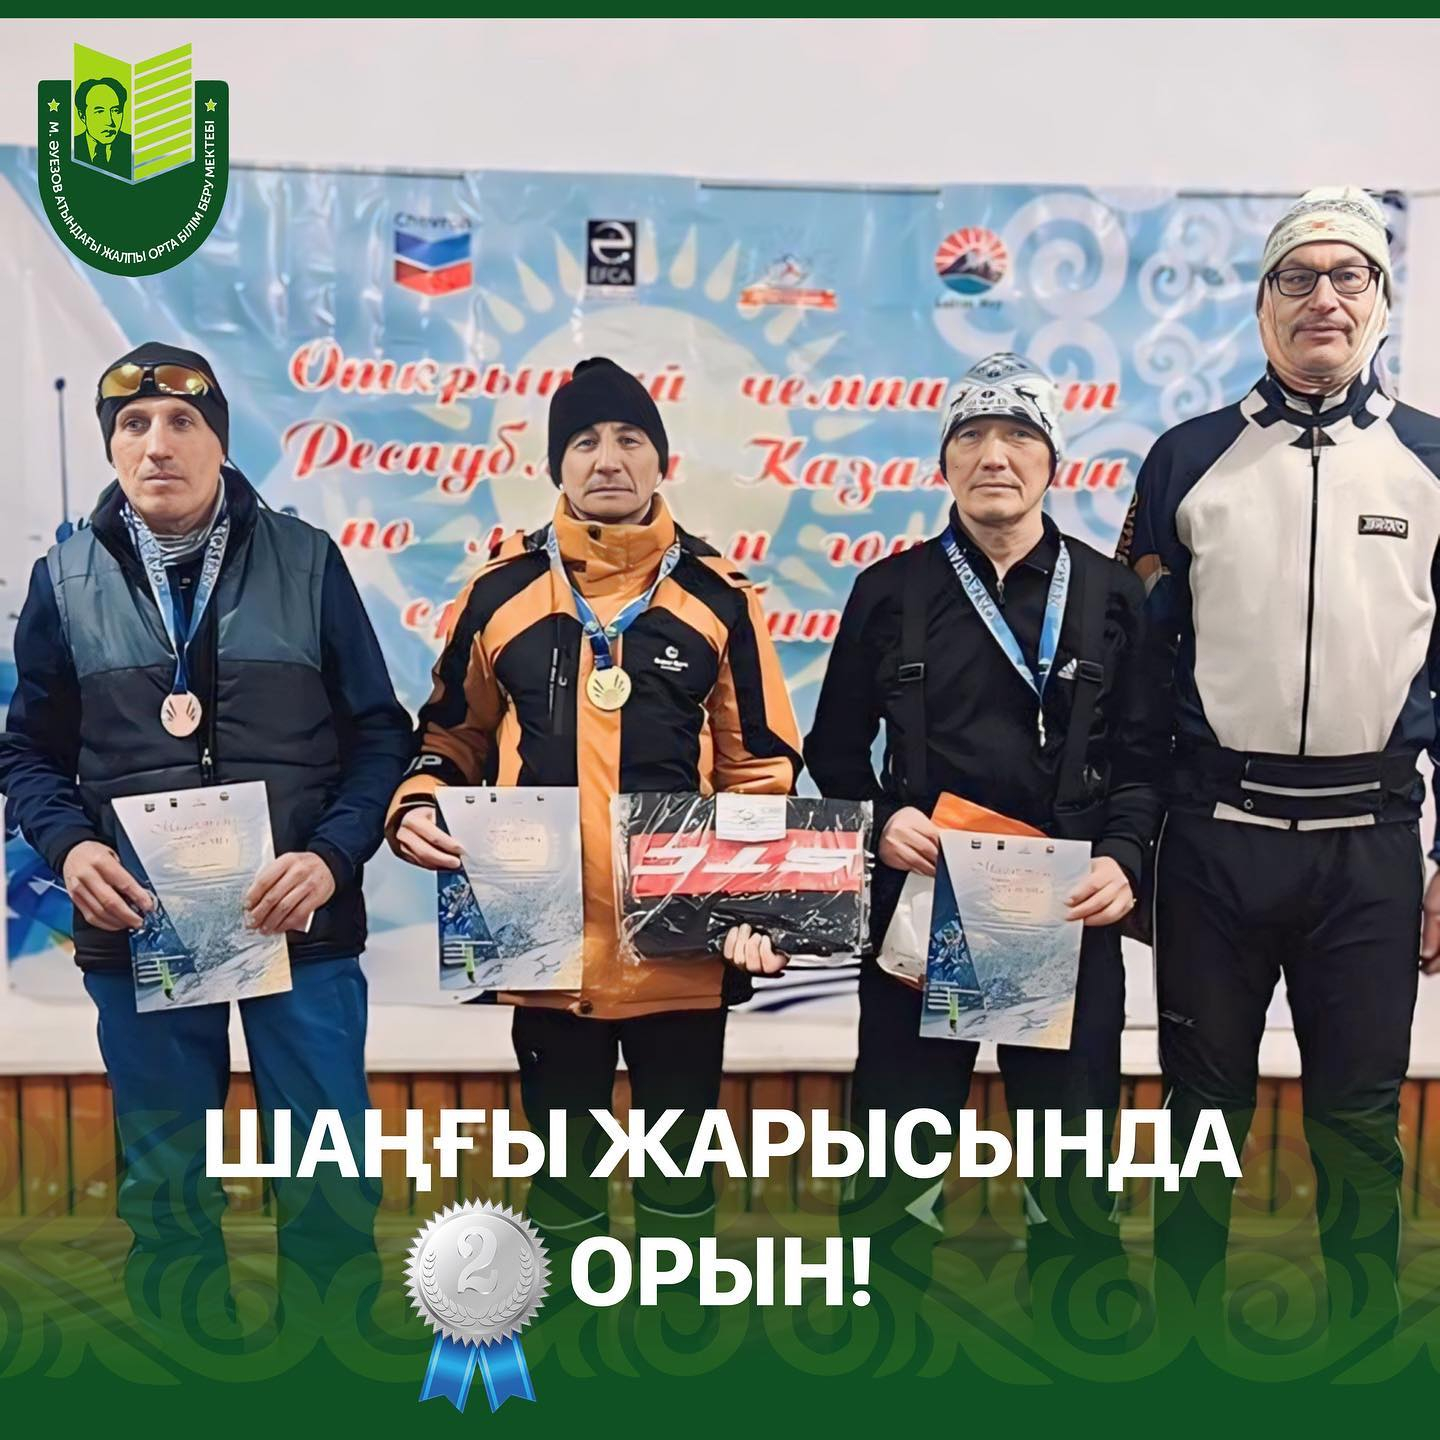 24 февраля в селе Балкашино Акмолинской области прошел открытый Республиканский чемпионат по лыжным гонкам.